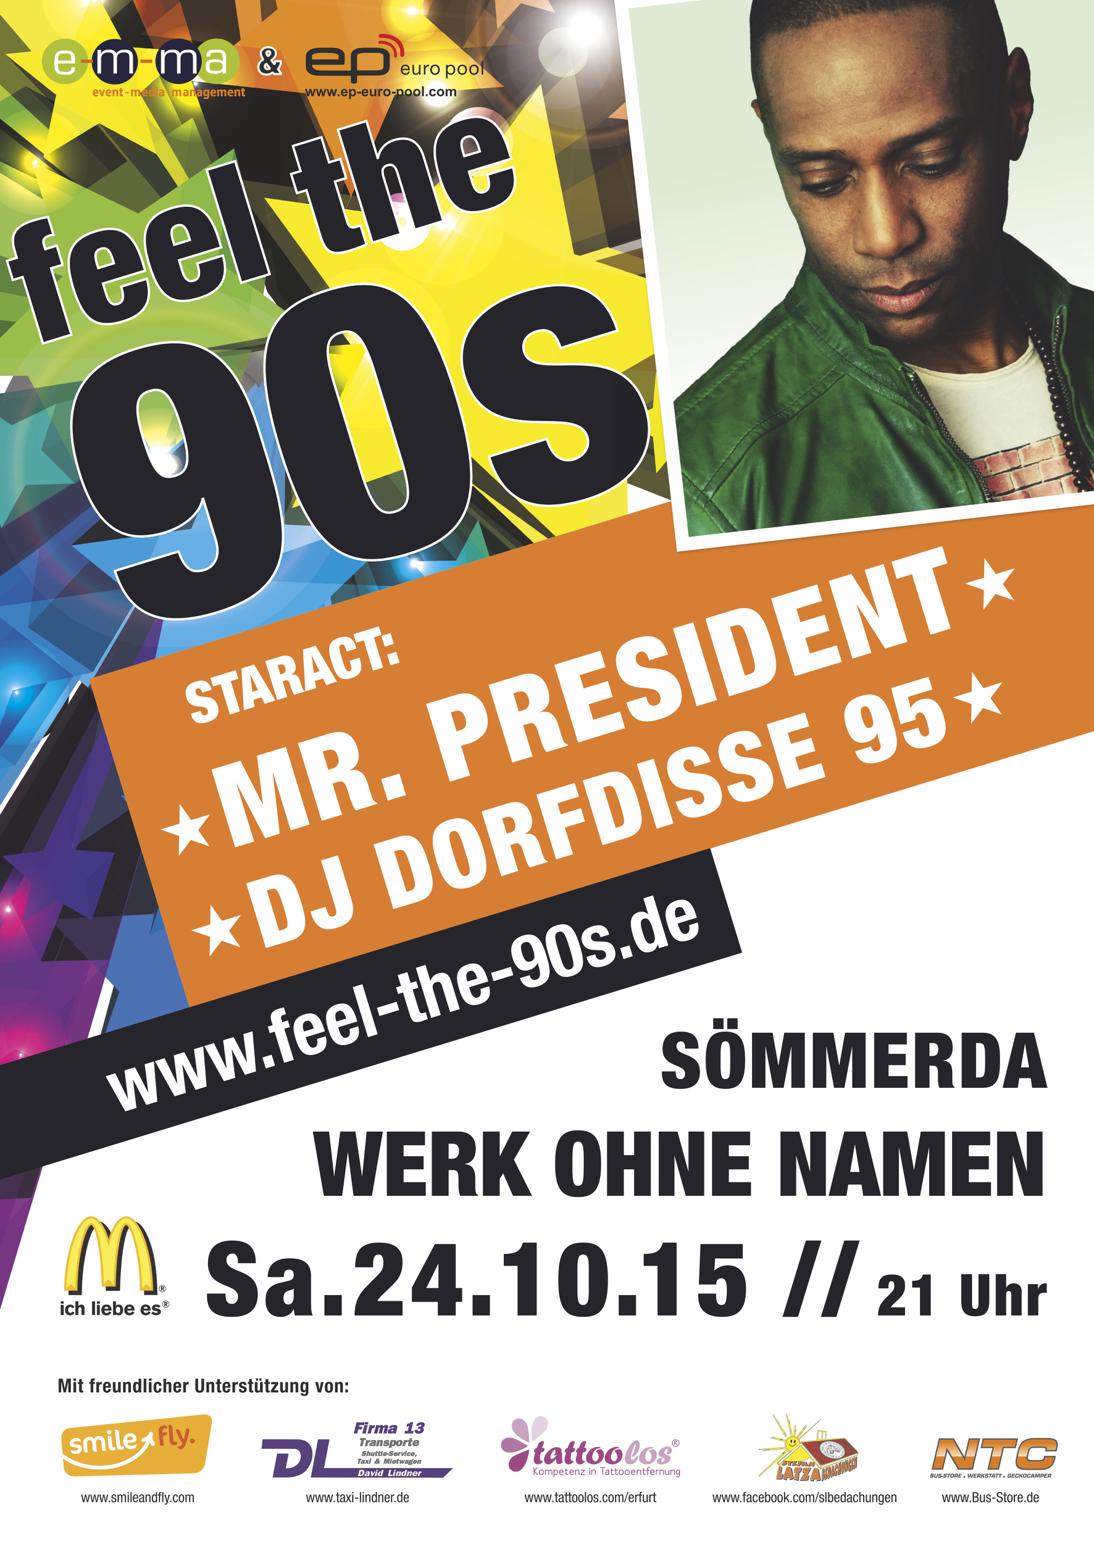 FEEL THE 90s - Star-Act: Mr. President & Dorfdisse 95 - Thüringens größte 90er Partyreihe